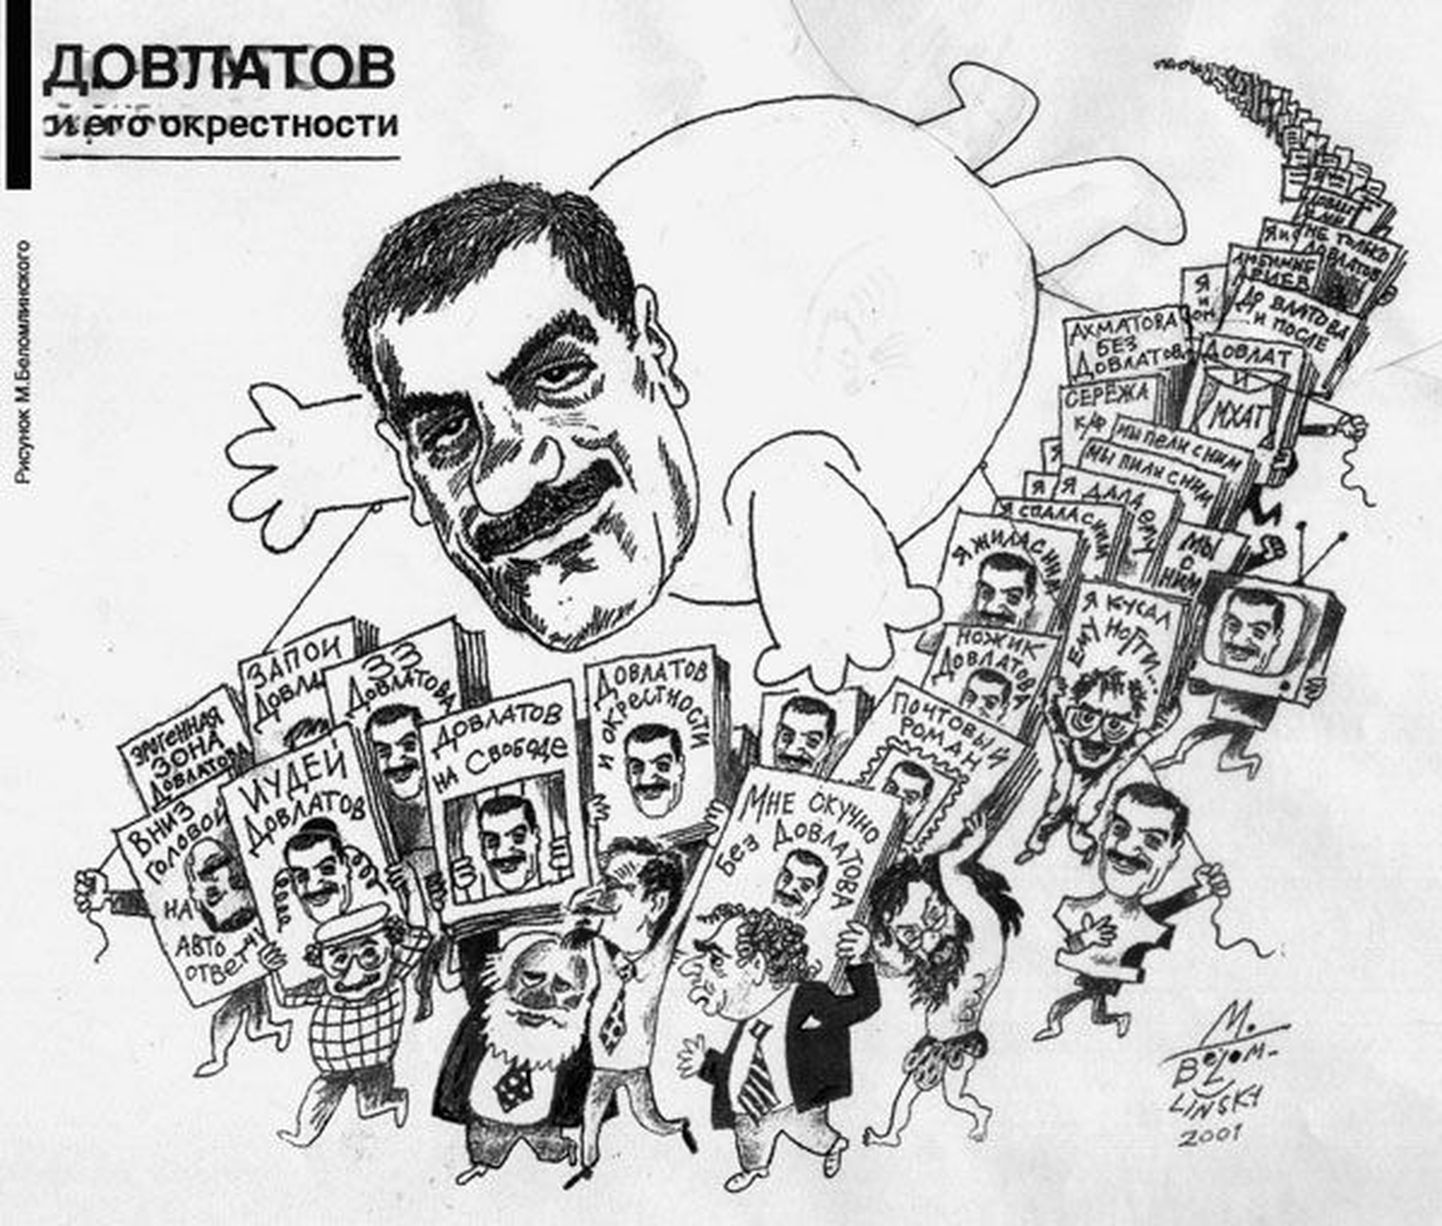 «Довлатов и его окрестности»: рисунок Михаила Беломлинского.